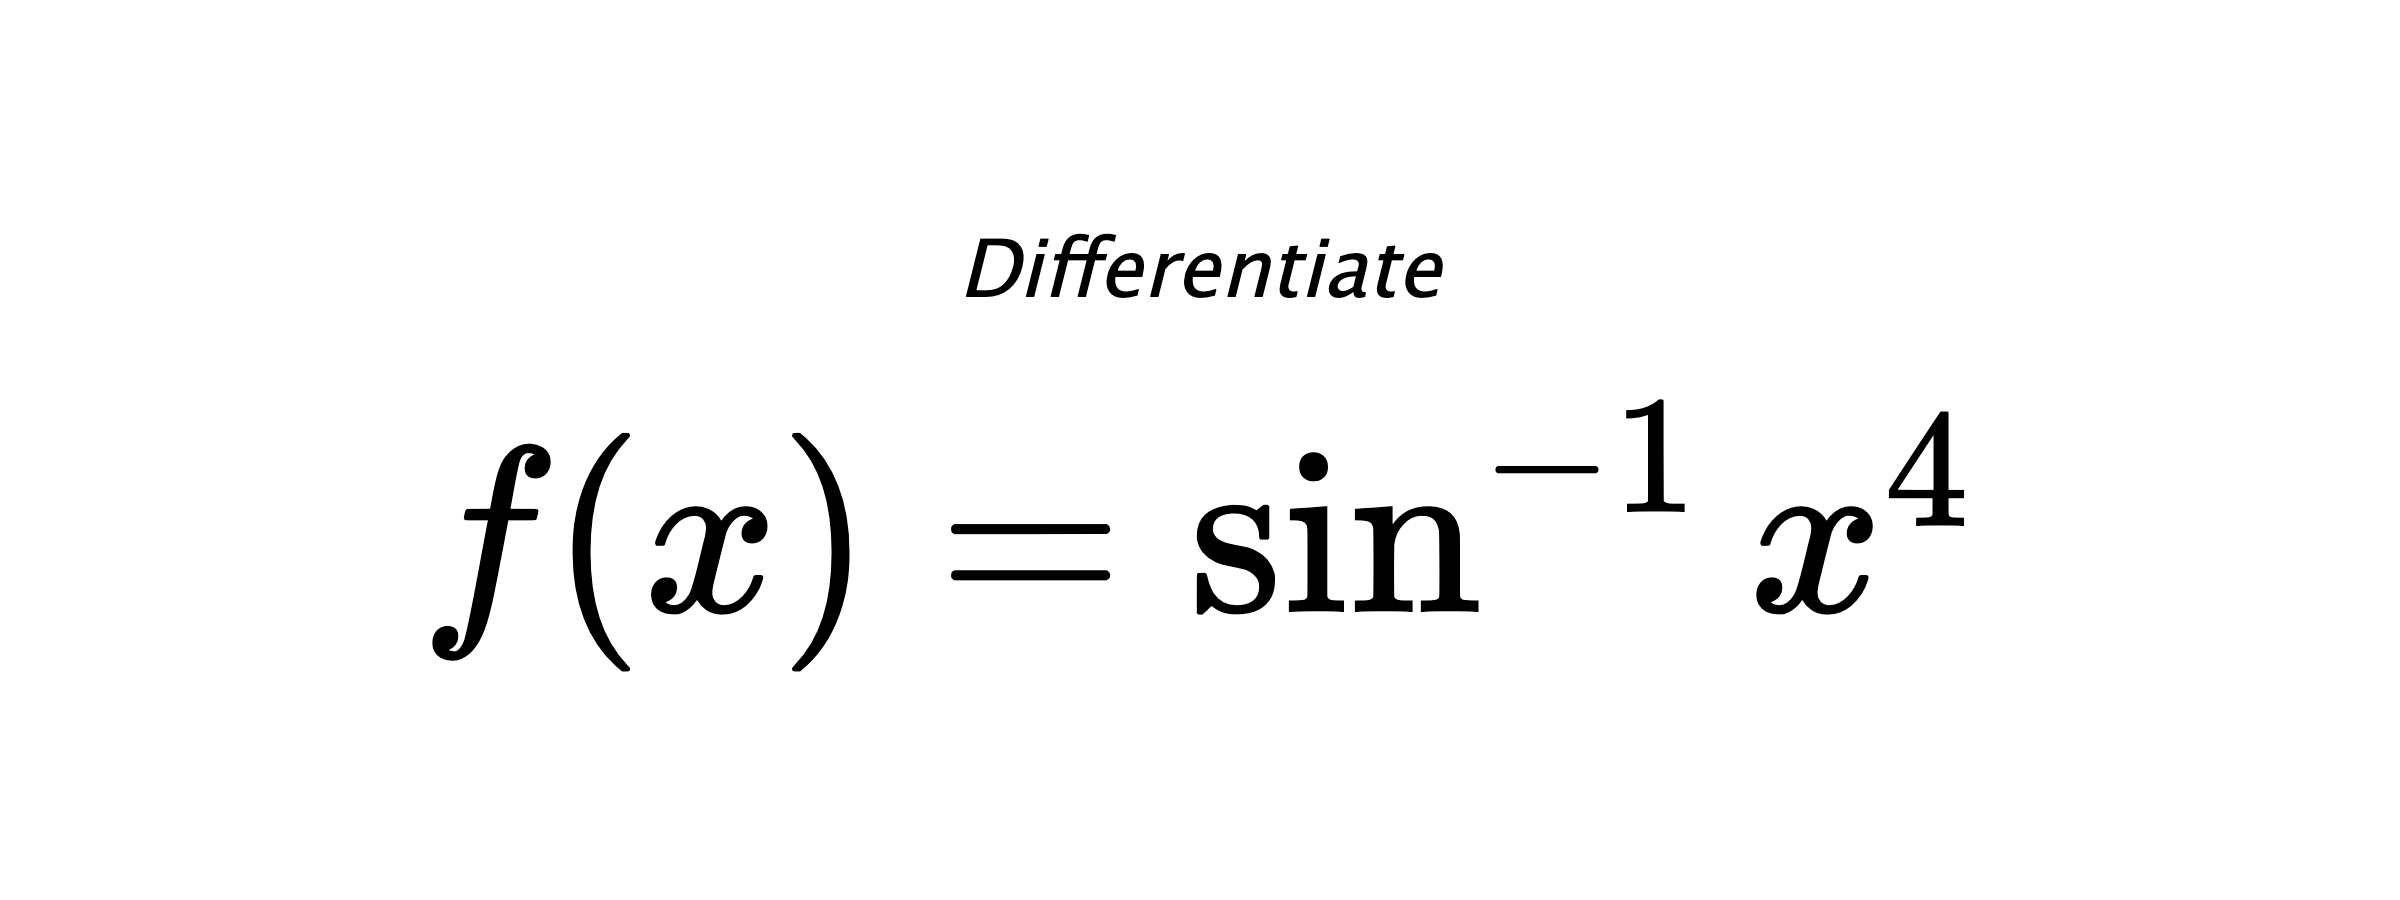 Differentiate $ f(x) = \sin^{-1} x^4 $